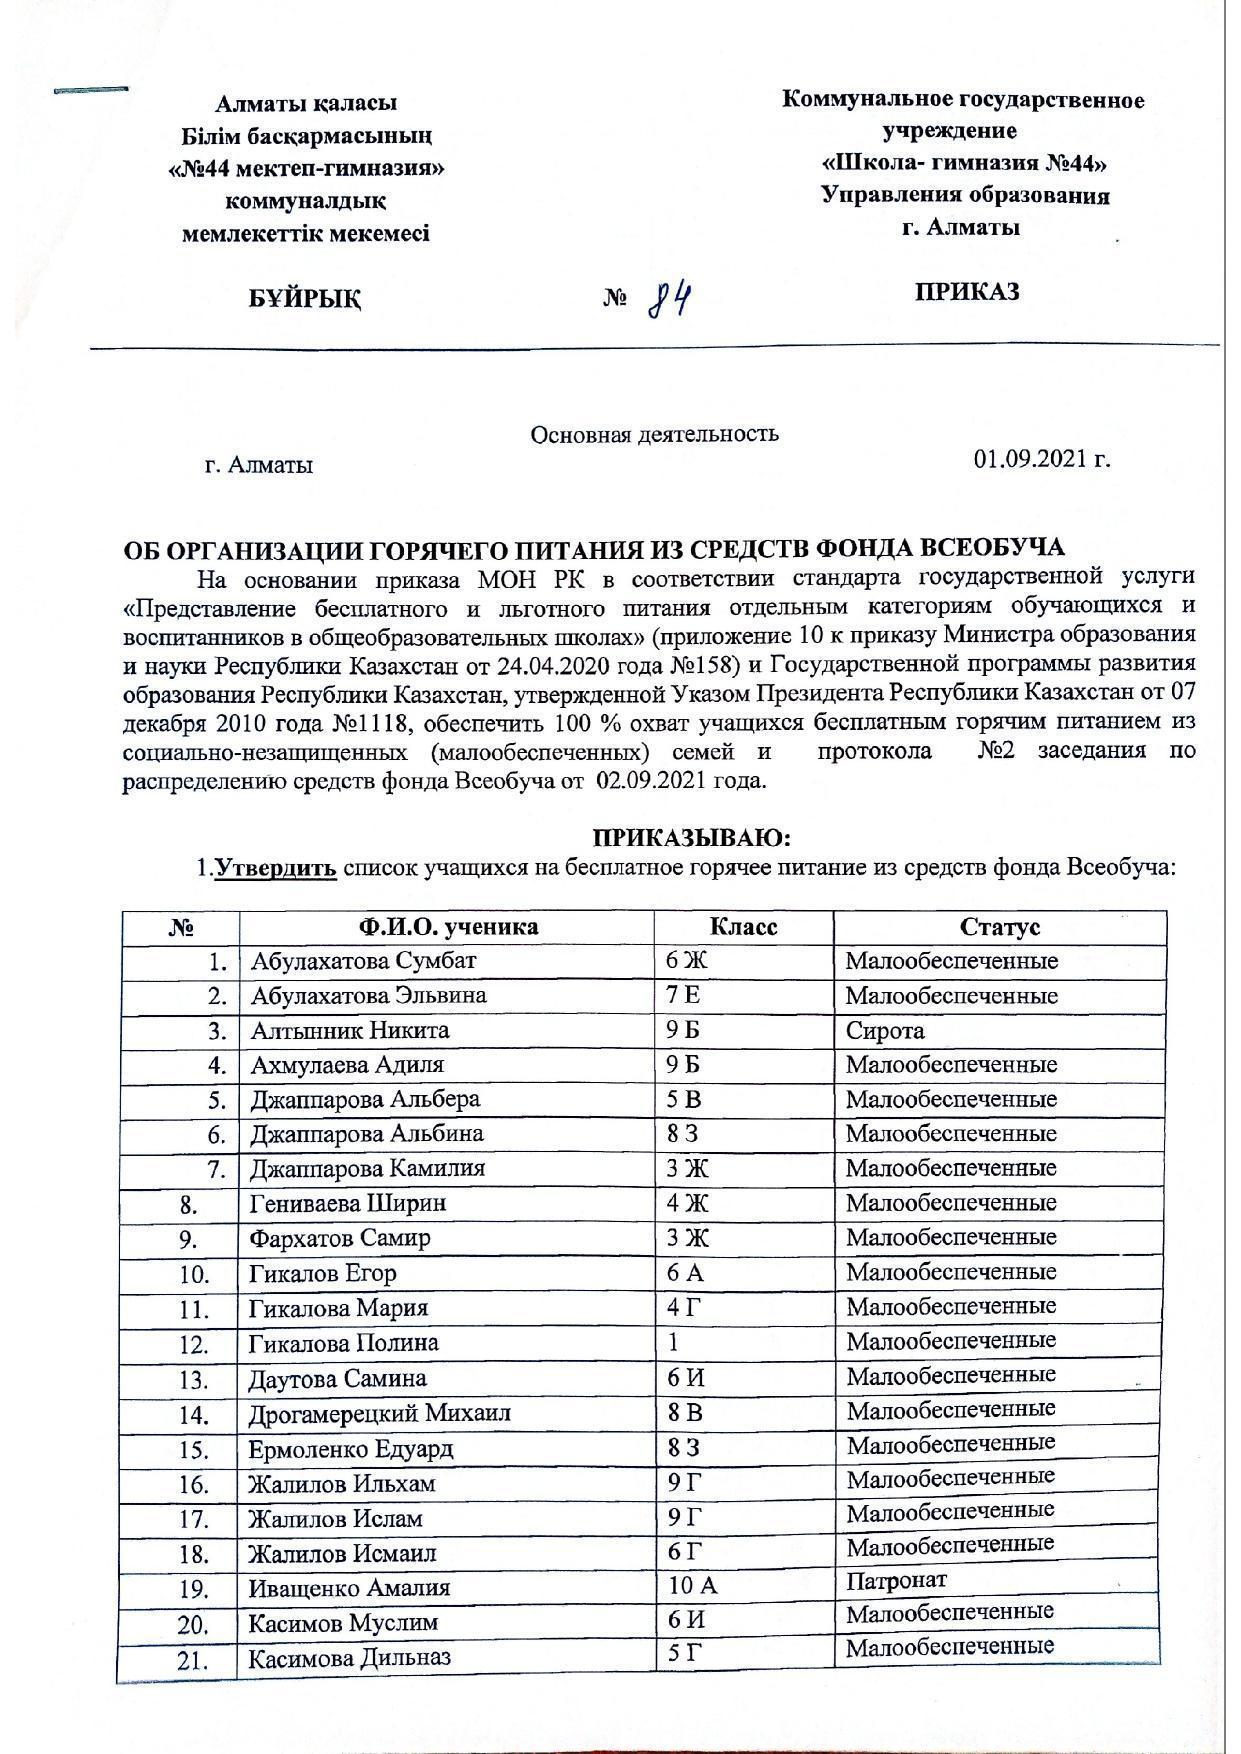 Протокол. Заседания комиссии по распределению средств фонда Жсеобуча